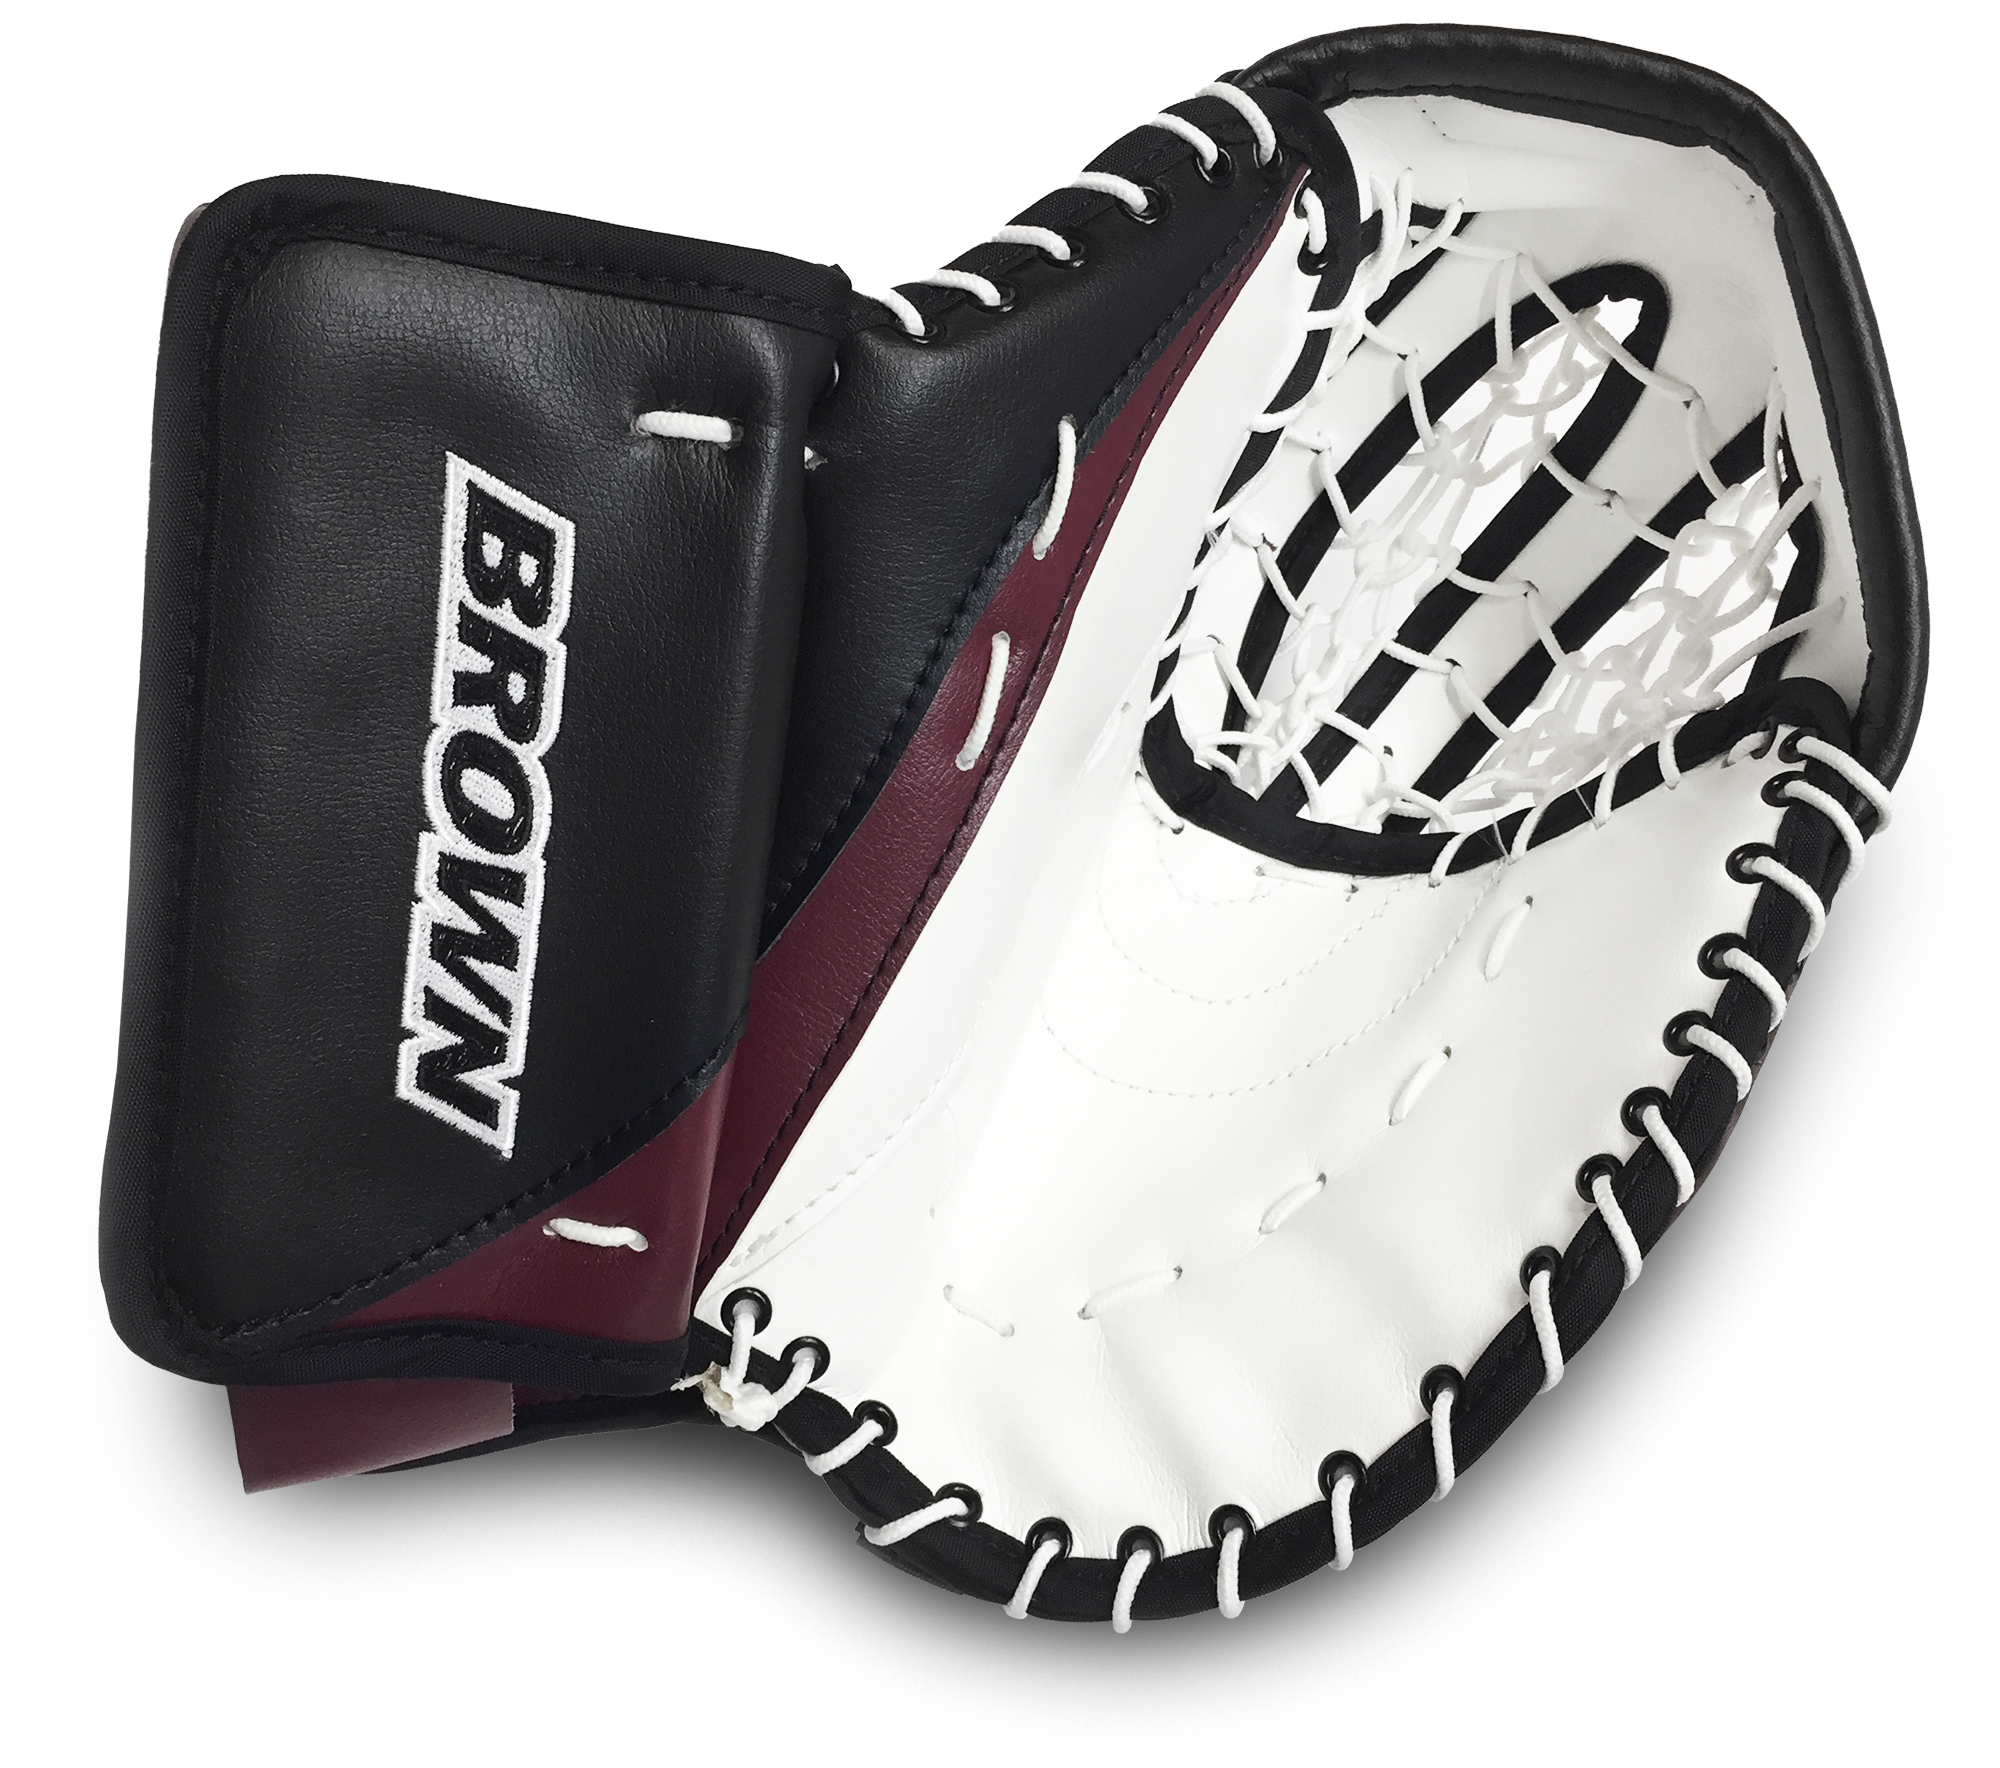 1750 junior catch glove: